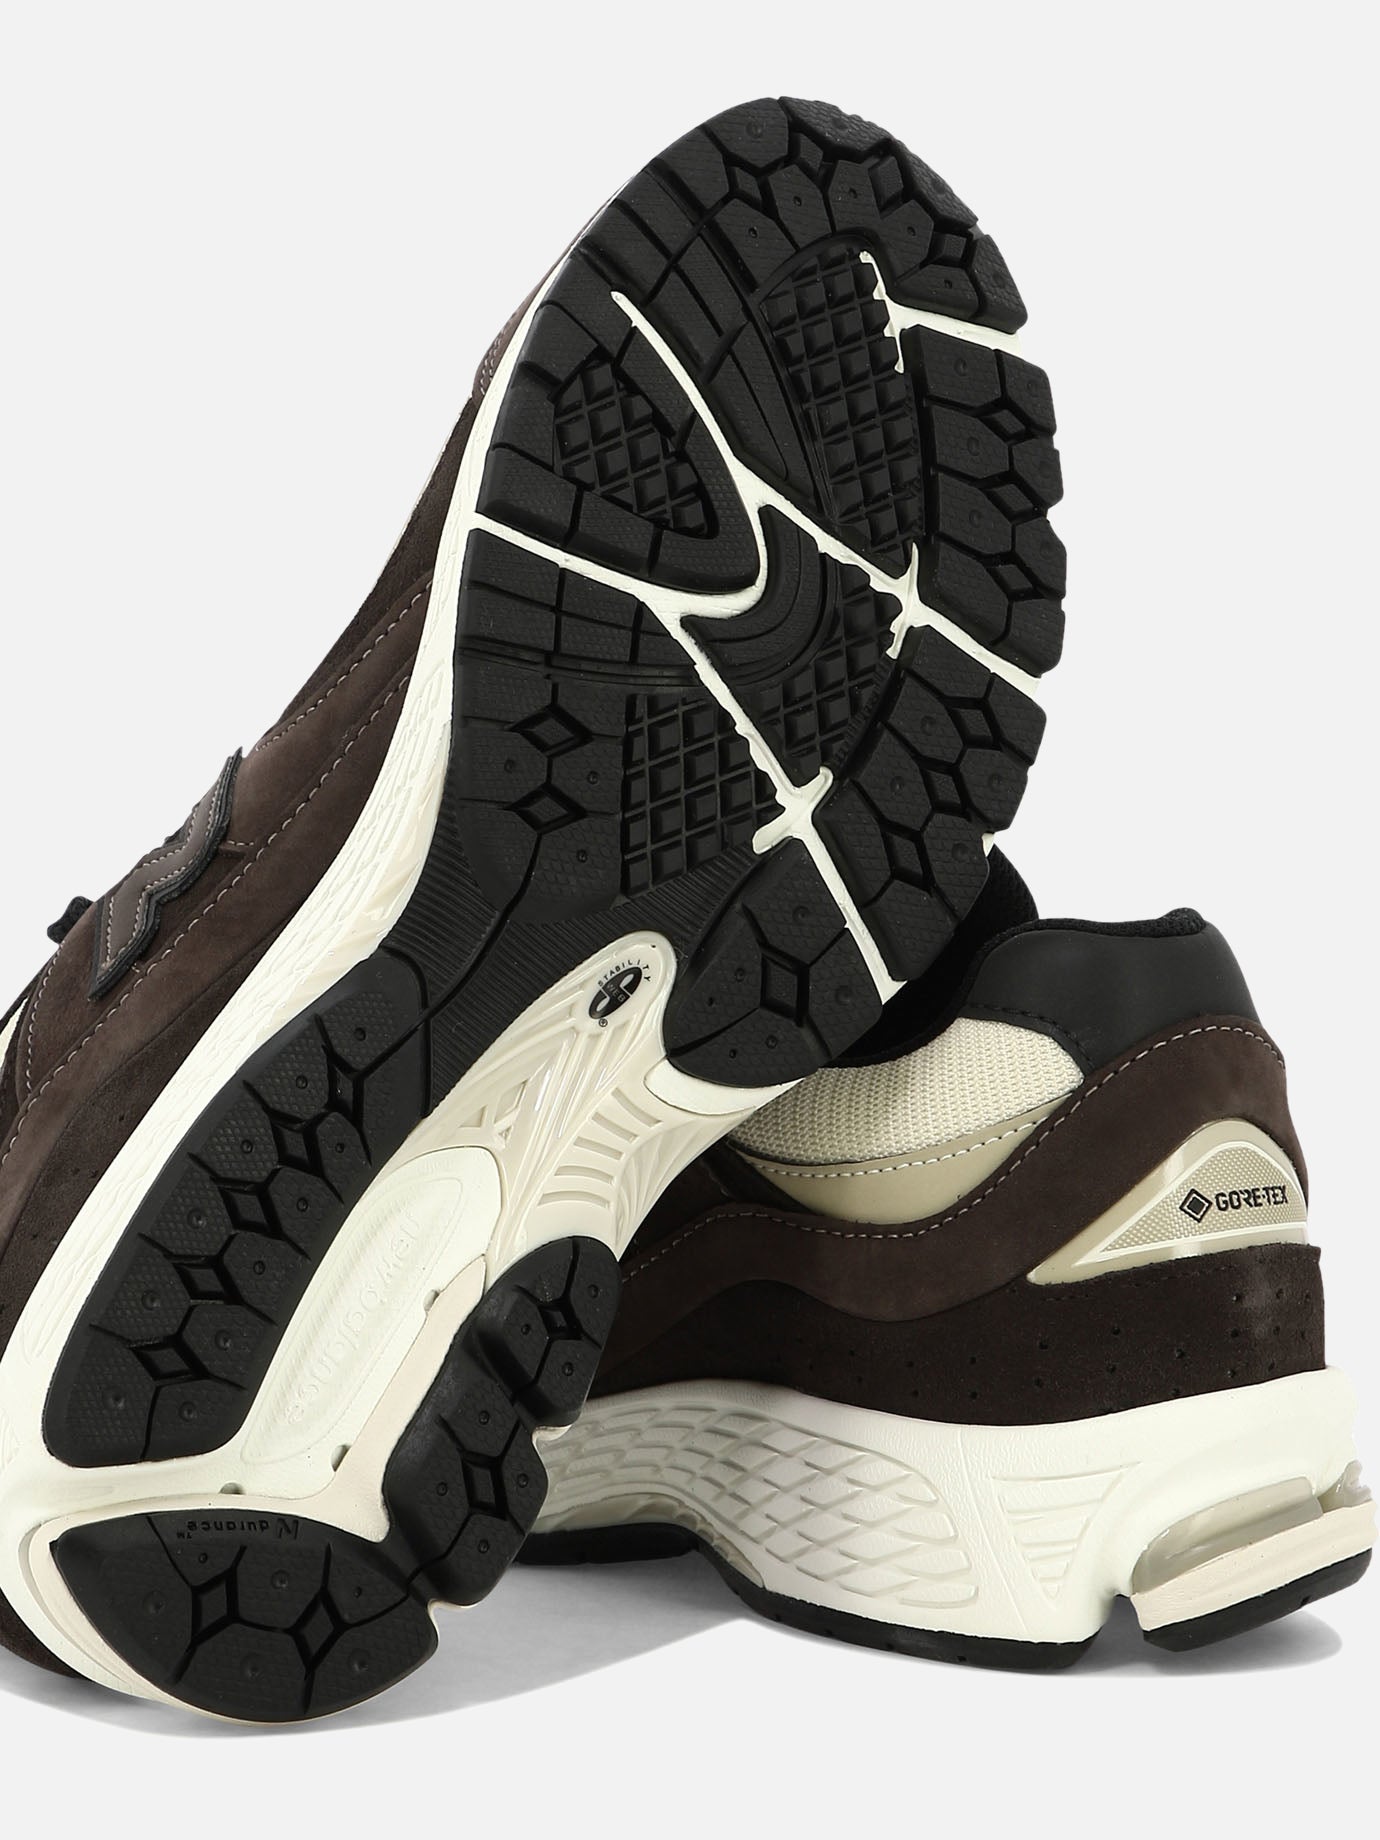 "2002" sneakers